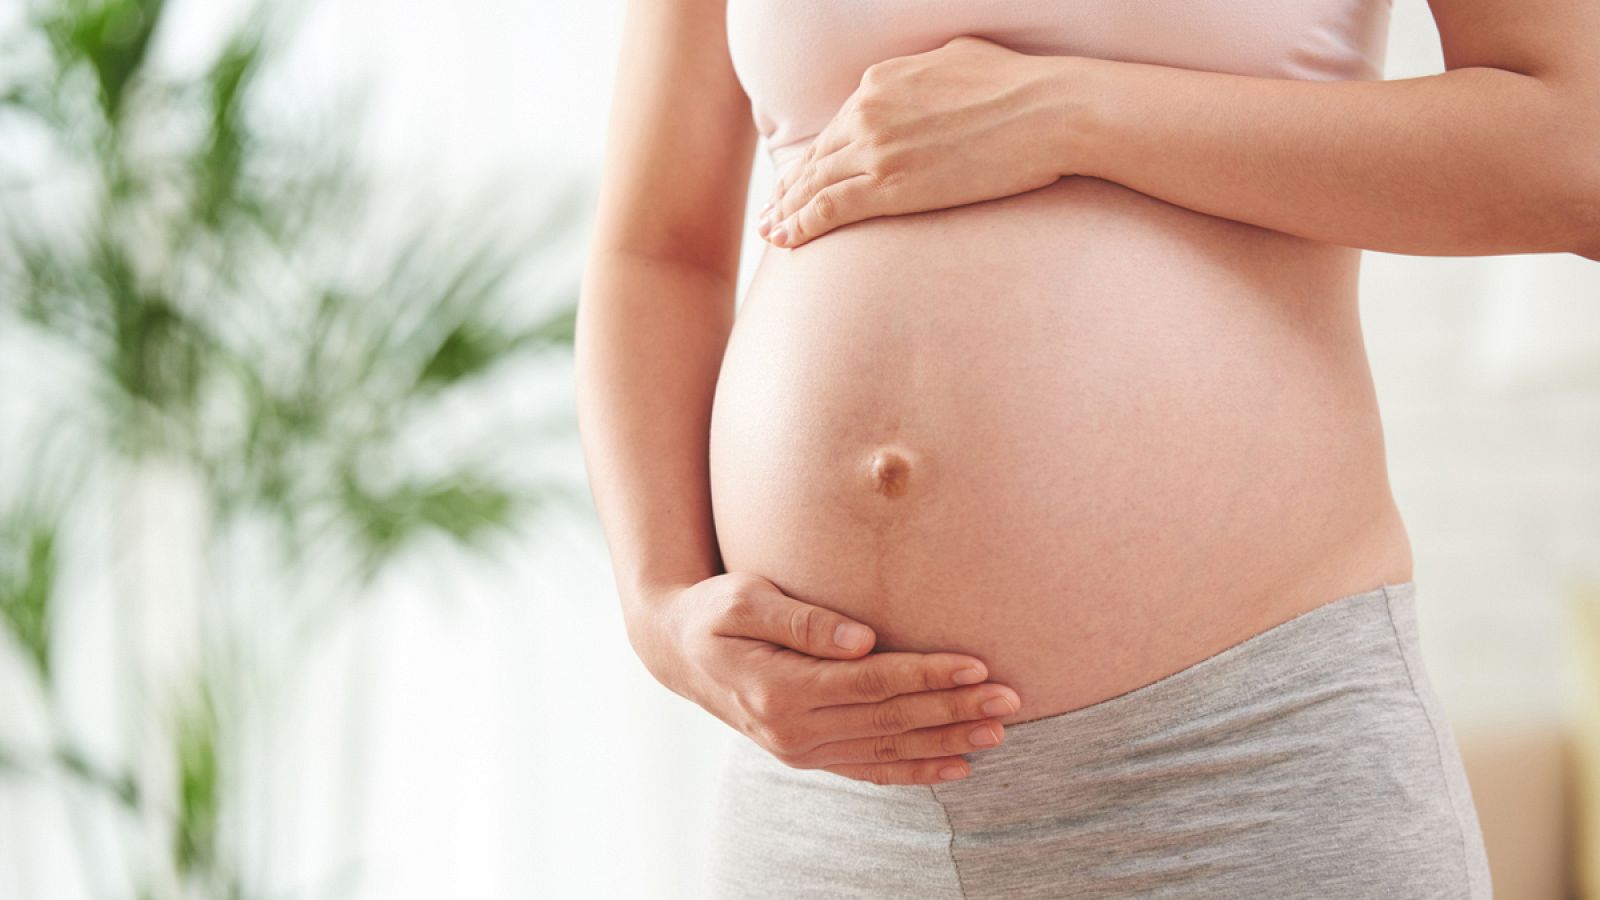 La diabetes materna durante la gestación supone un riesgo "muy importante" para la aparición de malformaciones en el desarrollo embrionario.